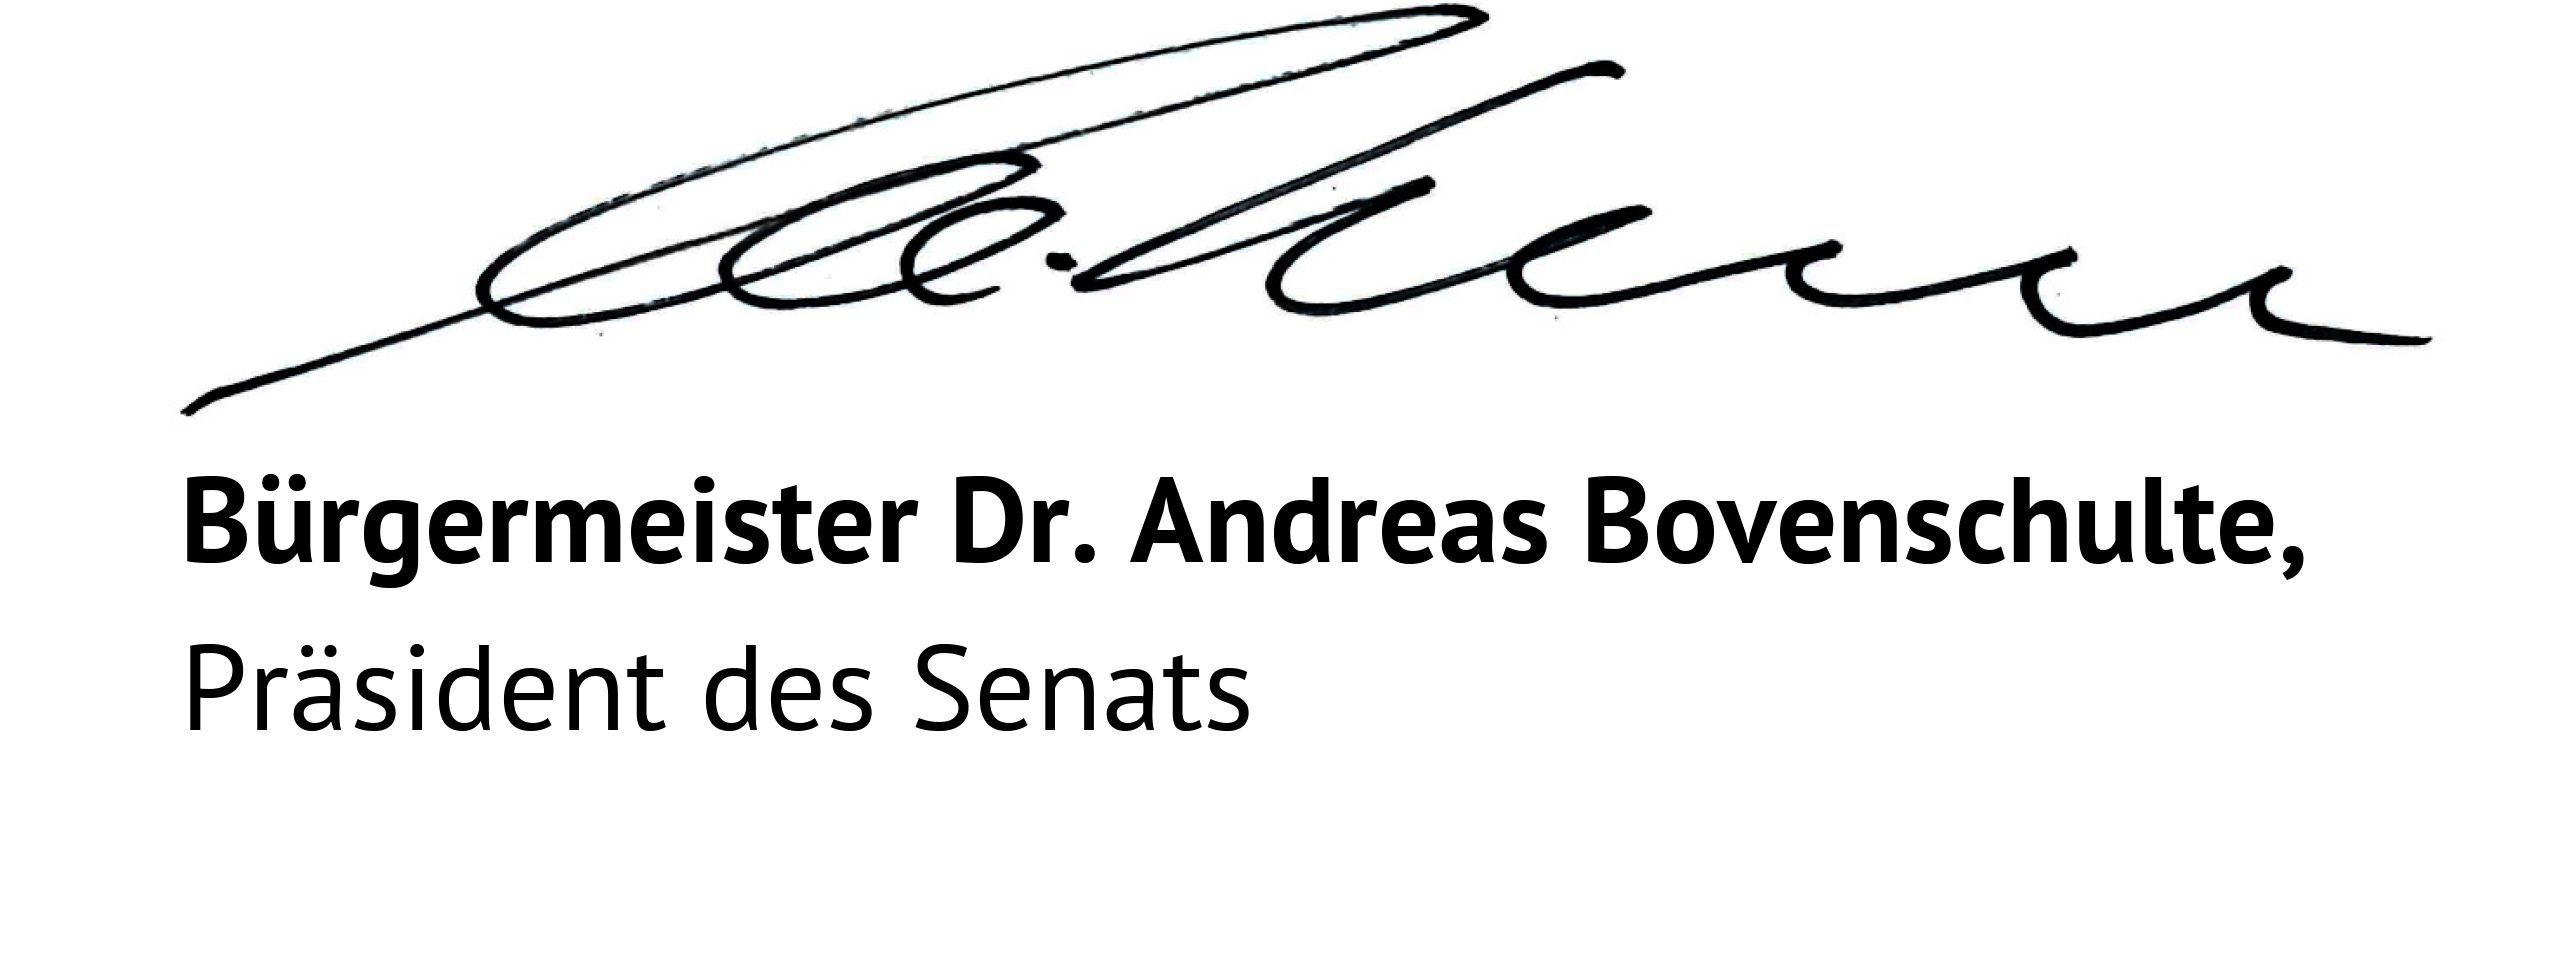 Unterschrift Bürgermeister Andreas Bovenschulte, Präsident des Senats